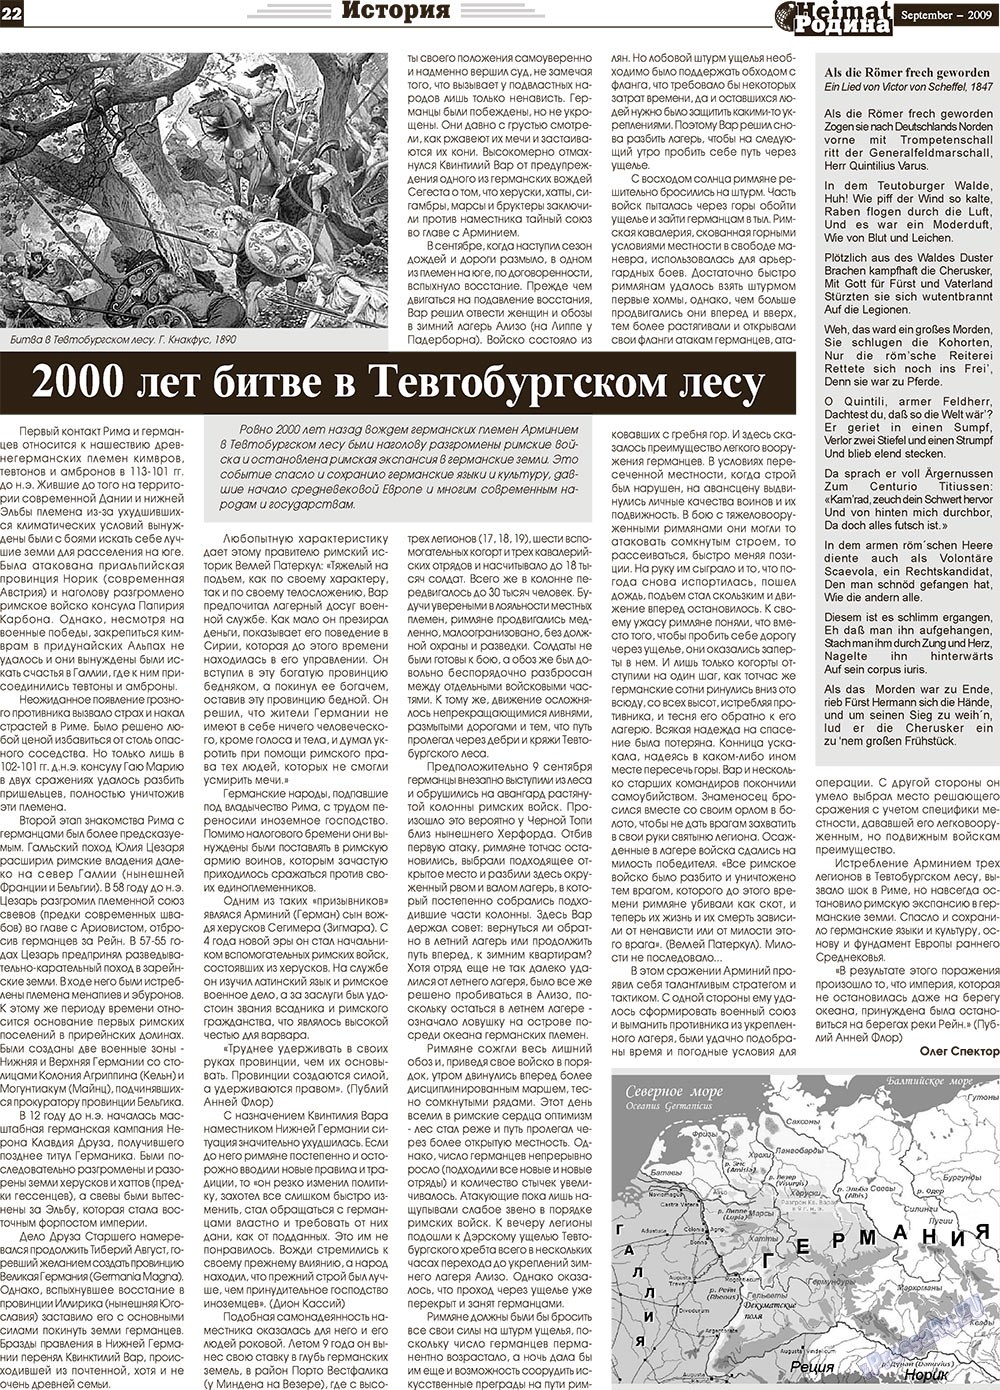 Heimat-Родина (газета). 2009 год, номер 9, стр. 22